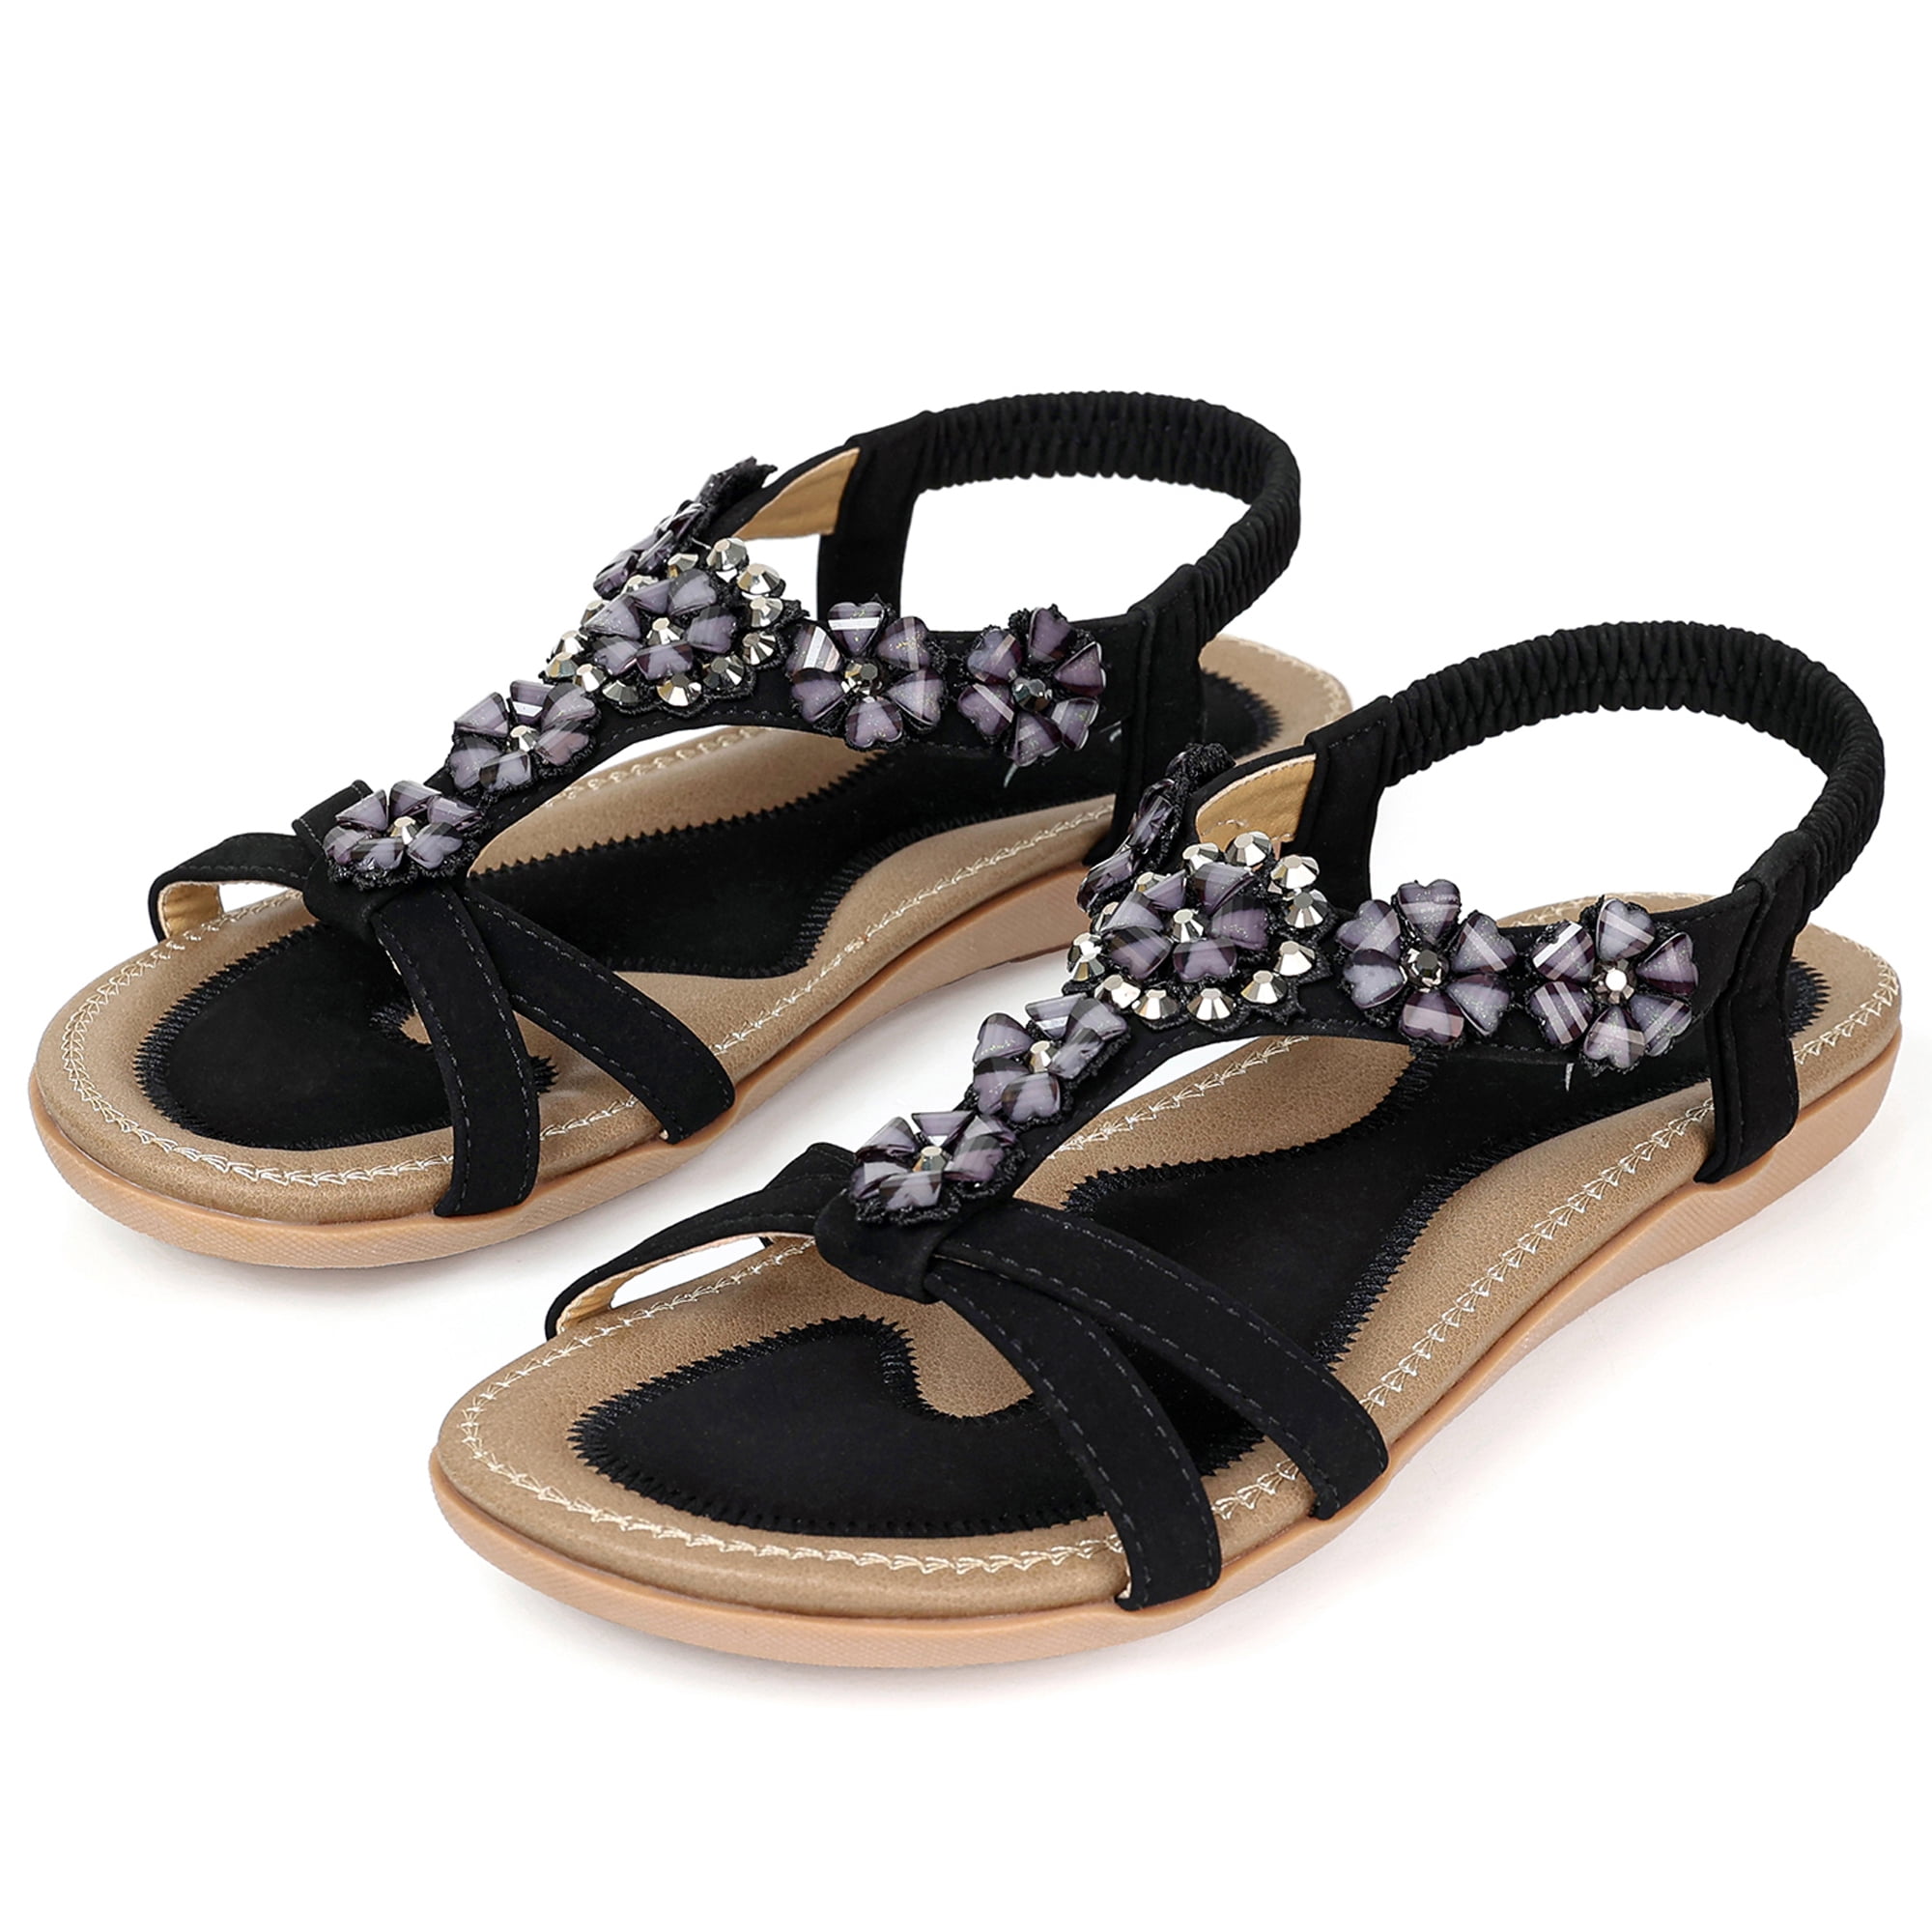 SWQZVT Women's Summer Black Sandals Casual Comfortable Beach Shoes Elastic  Ankle Strap Flat Sandals for Women 